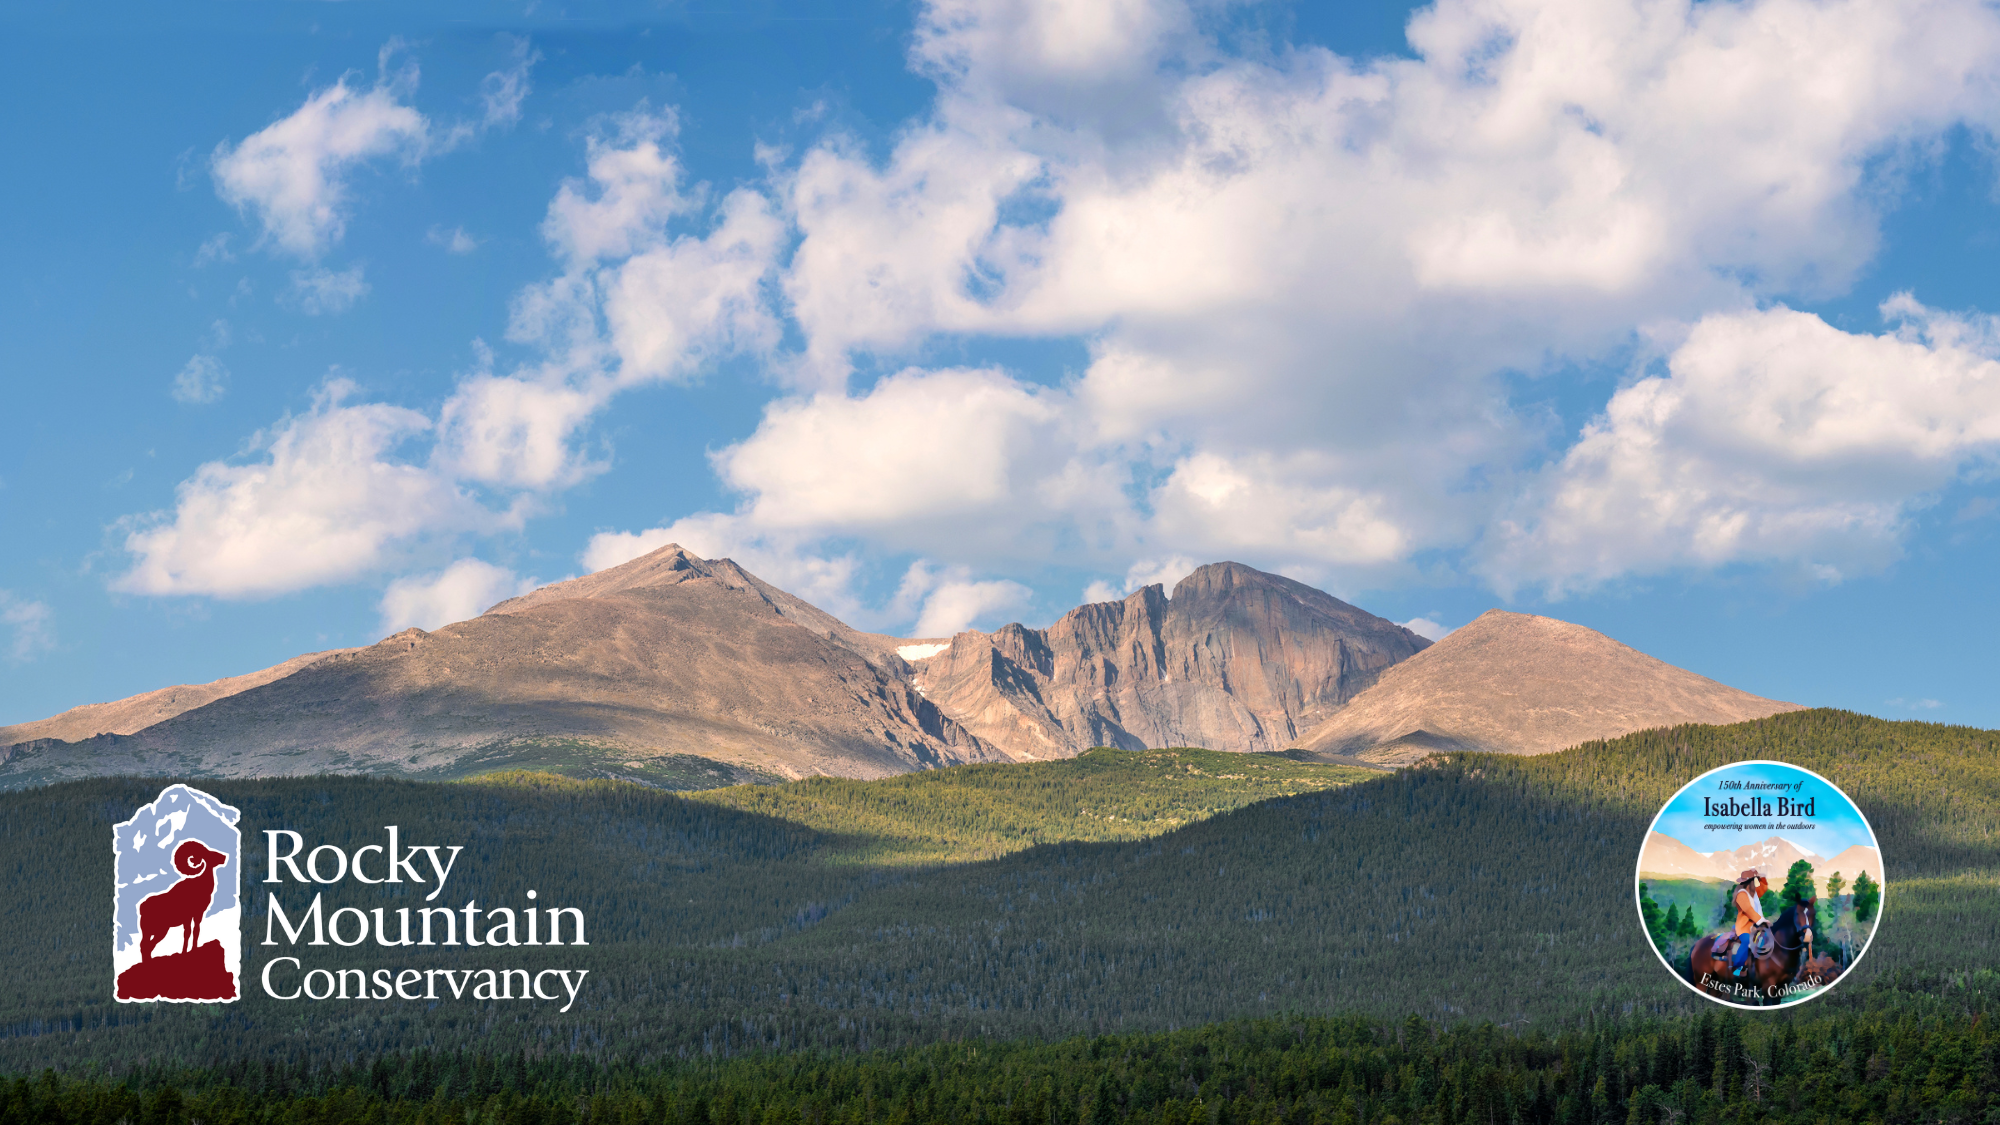 Rocky mountain conservancy logo.